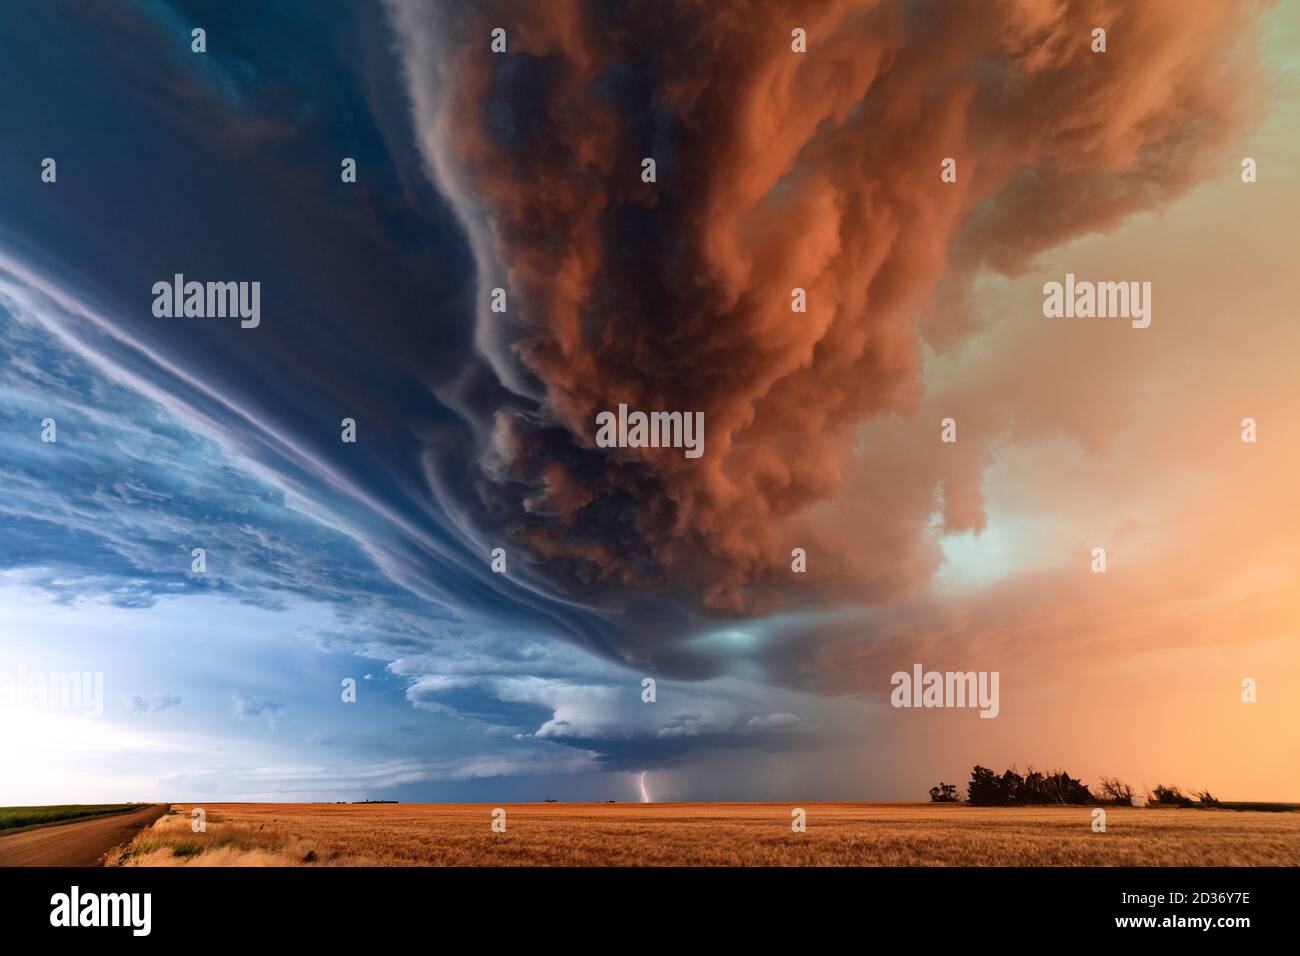 Des nuages spectaculaires et un orage supercellulaire sont balayés par une tempête linéaire au coucher du soleil lors d'une épidémie de temps grave près de St. Francis, Kansas Banque D'Images